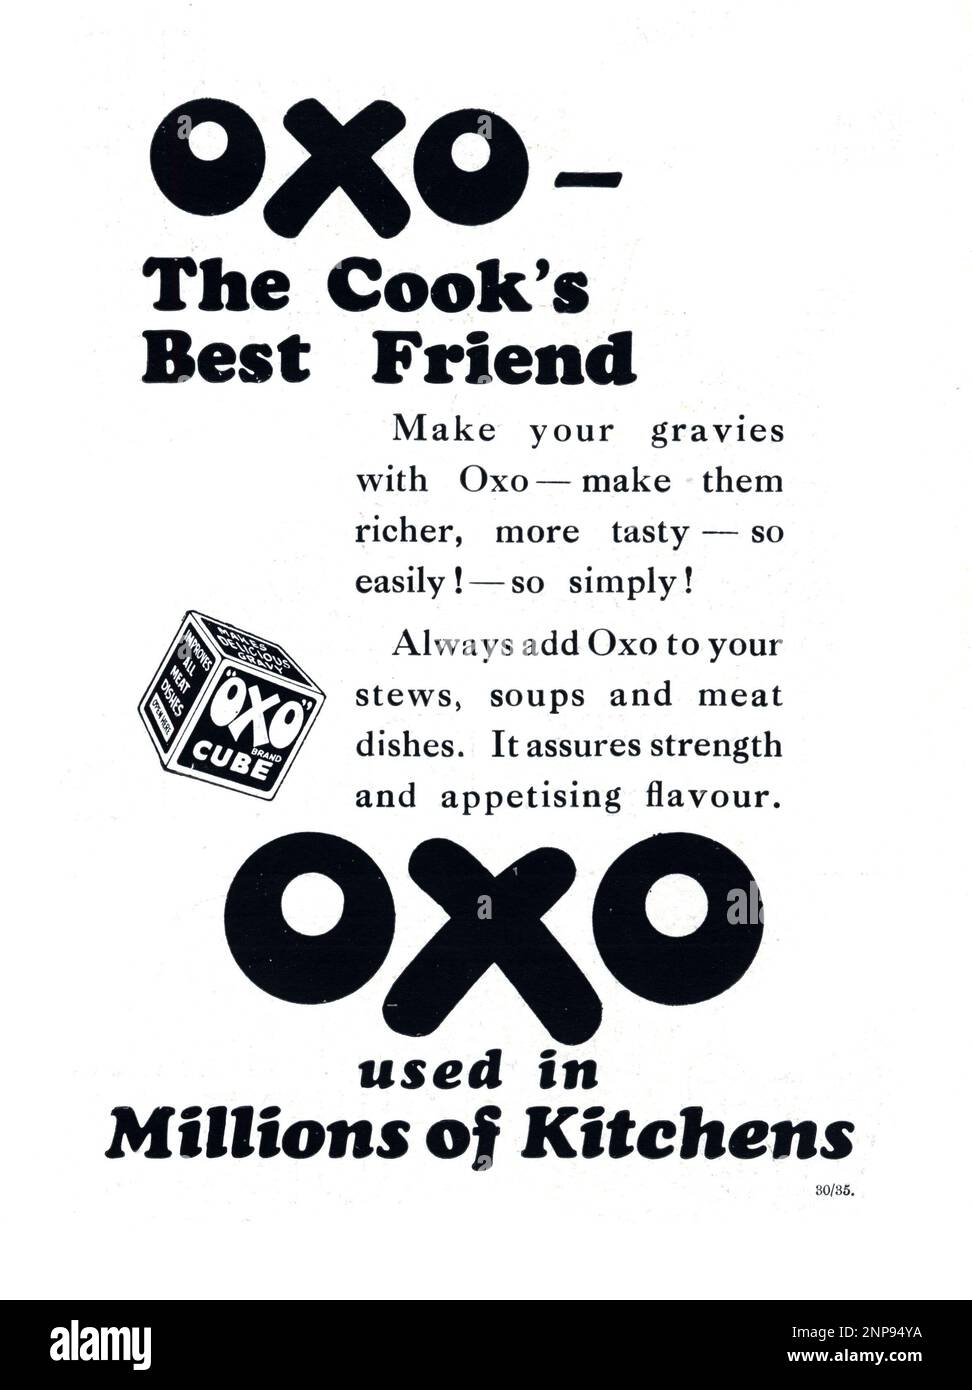 Die Sphäre war eine unbeschämte London-zentrierte Woche, oder die illustrierte Weekly des Empire. Anzeige von 1935. Oxy - der beste Freund des Kochs. Aus der Zeit, als Oxo-Würfel in einzelnen Kartons geliefert wurden. Stockfoto